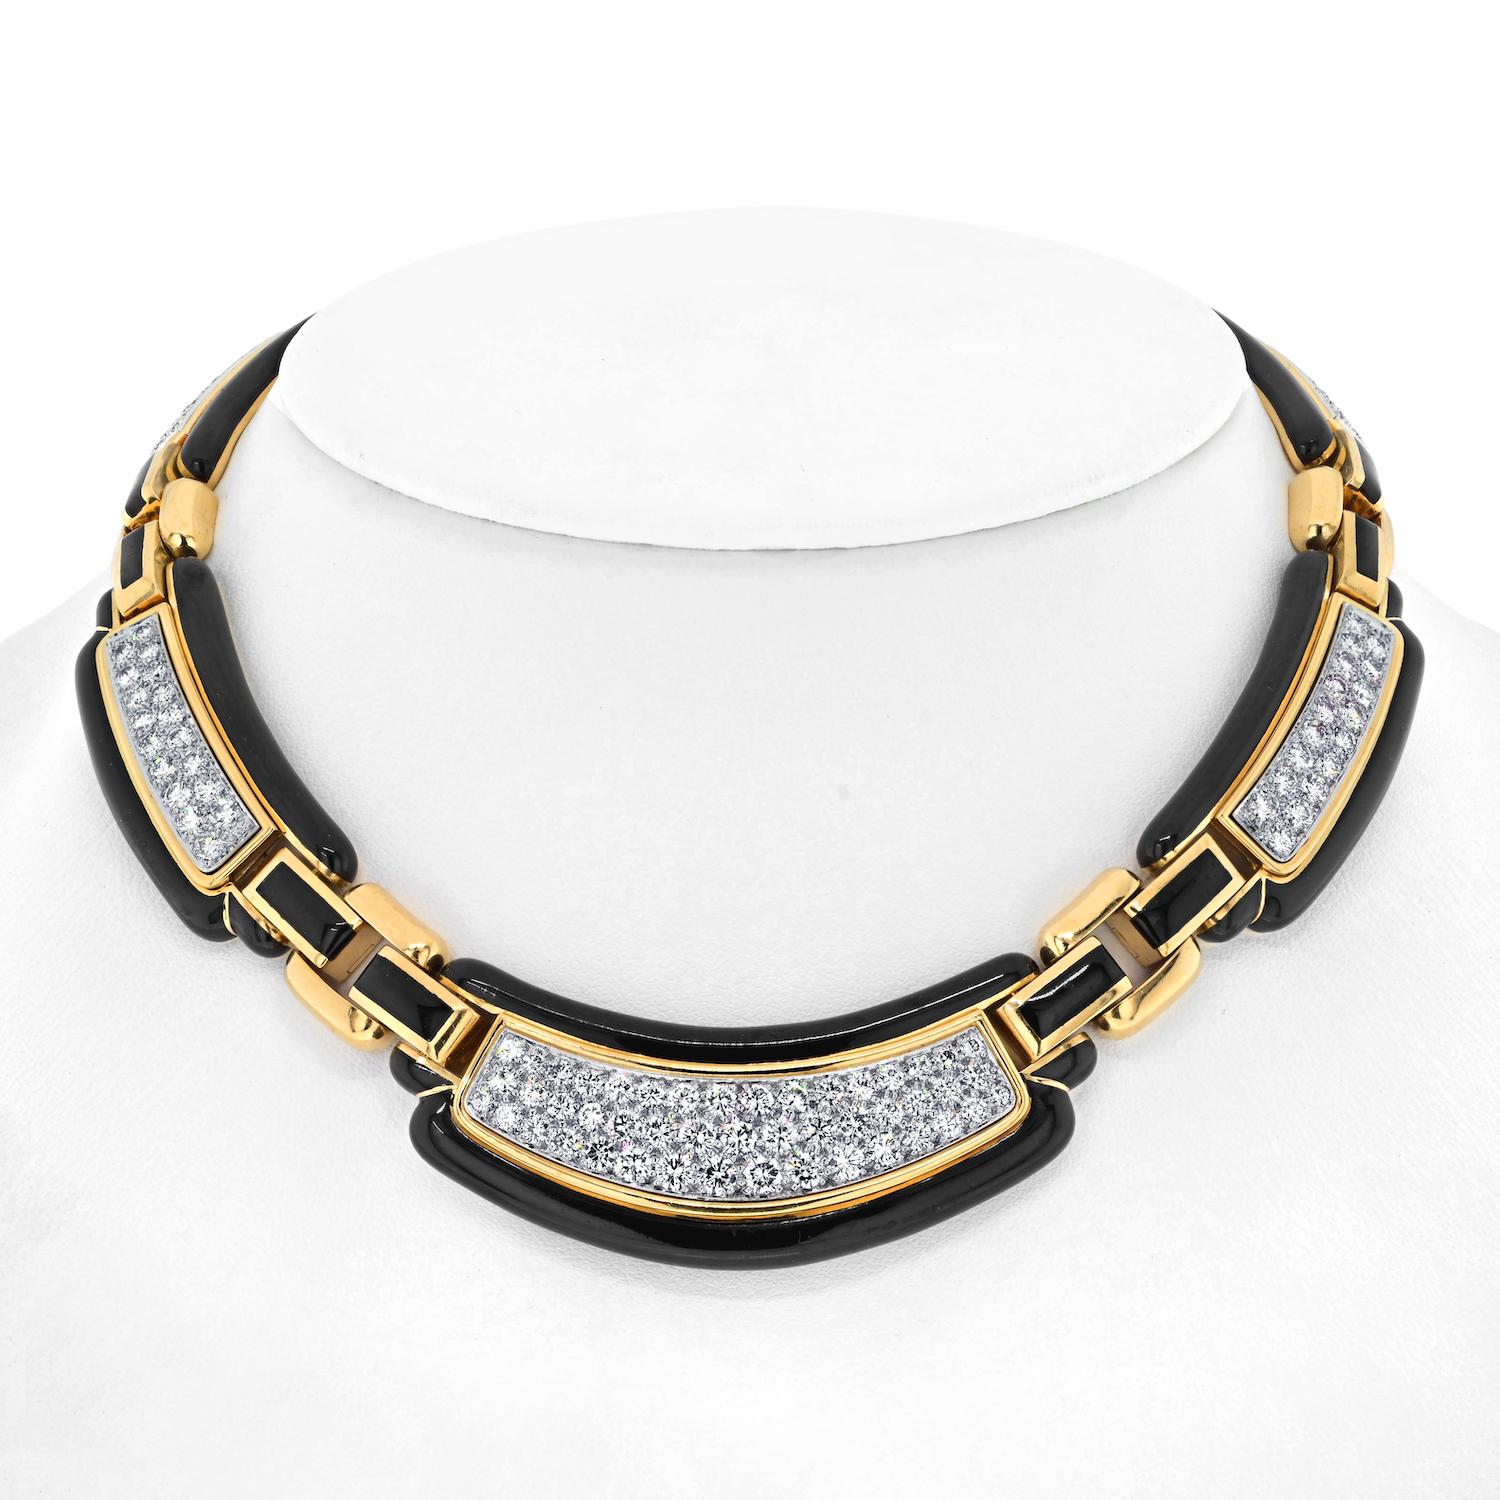 Lassen Sie sich von der faszinierenden Schönheit dieser David Webb Halskette aus Platin und 18 Karat Gelbgold mit Diamanten aus schwarzem Emaille verzaubern. Dieses außergewöhnliche Stück ist ein Beispiel für die unvergleichliche Handwerkskunst und